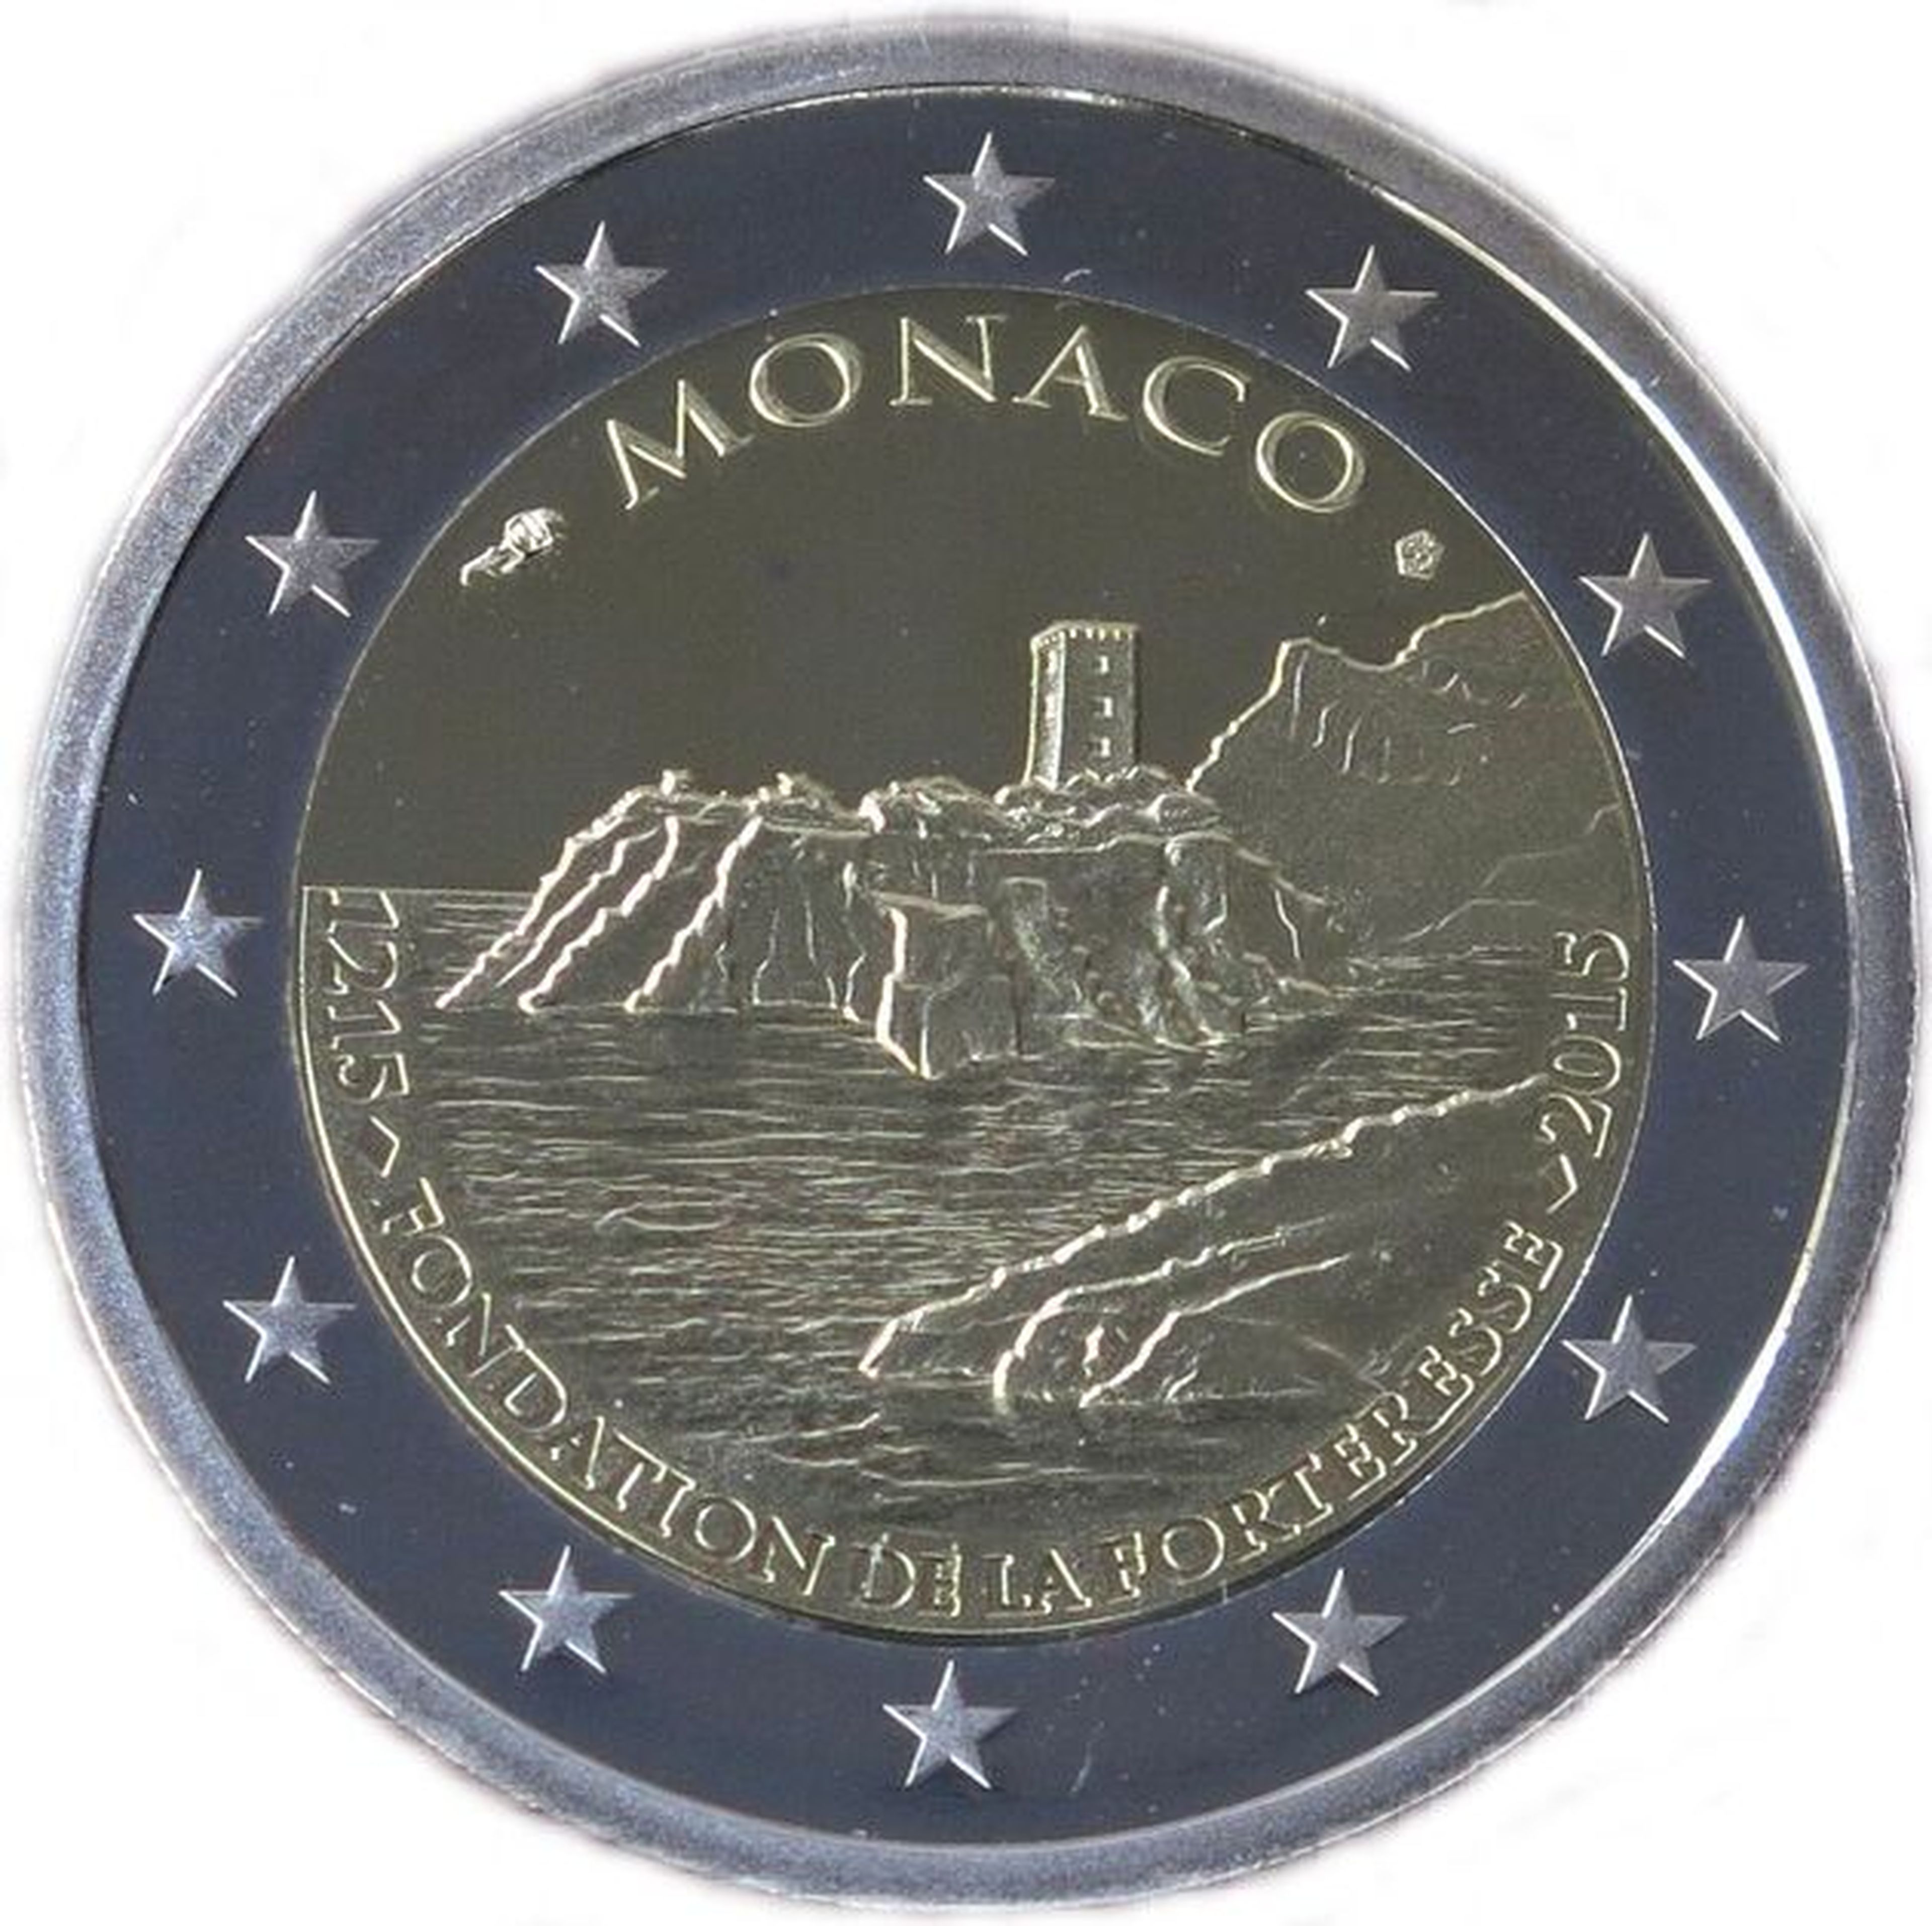 Moneda de 2 euros Mónaco 2015, Roca de Mónaco